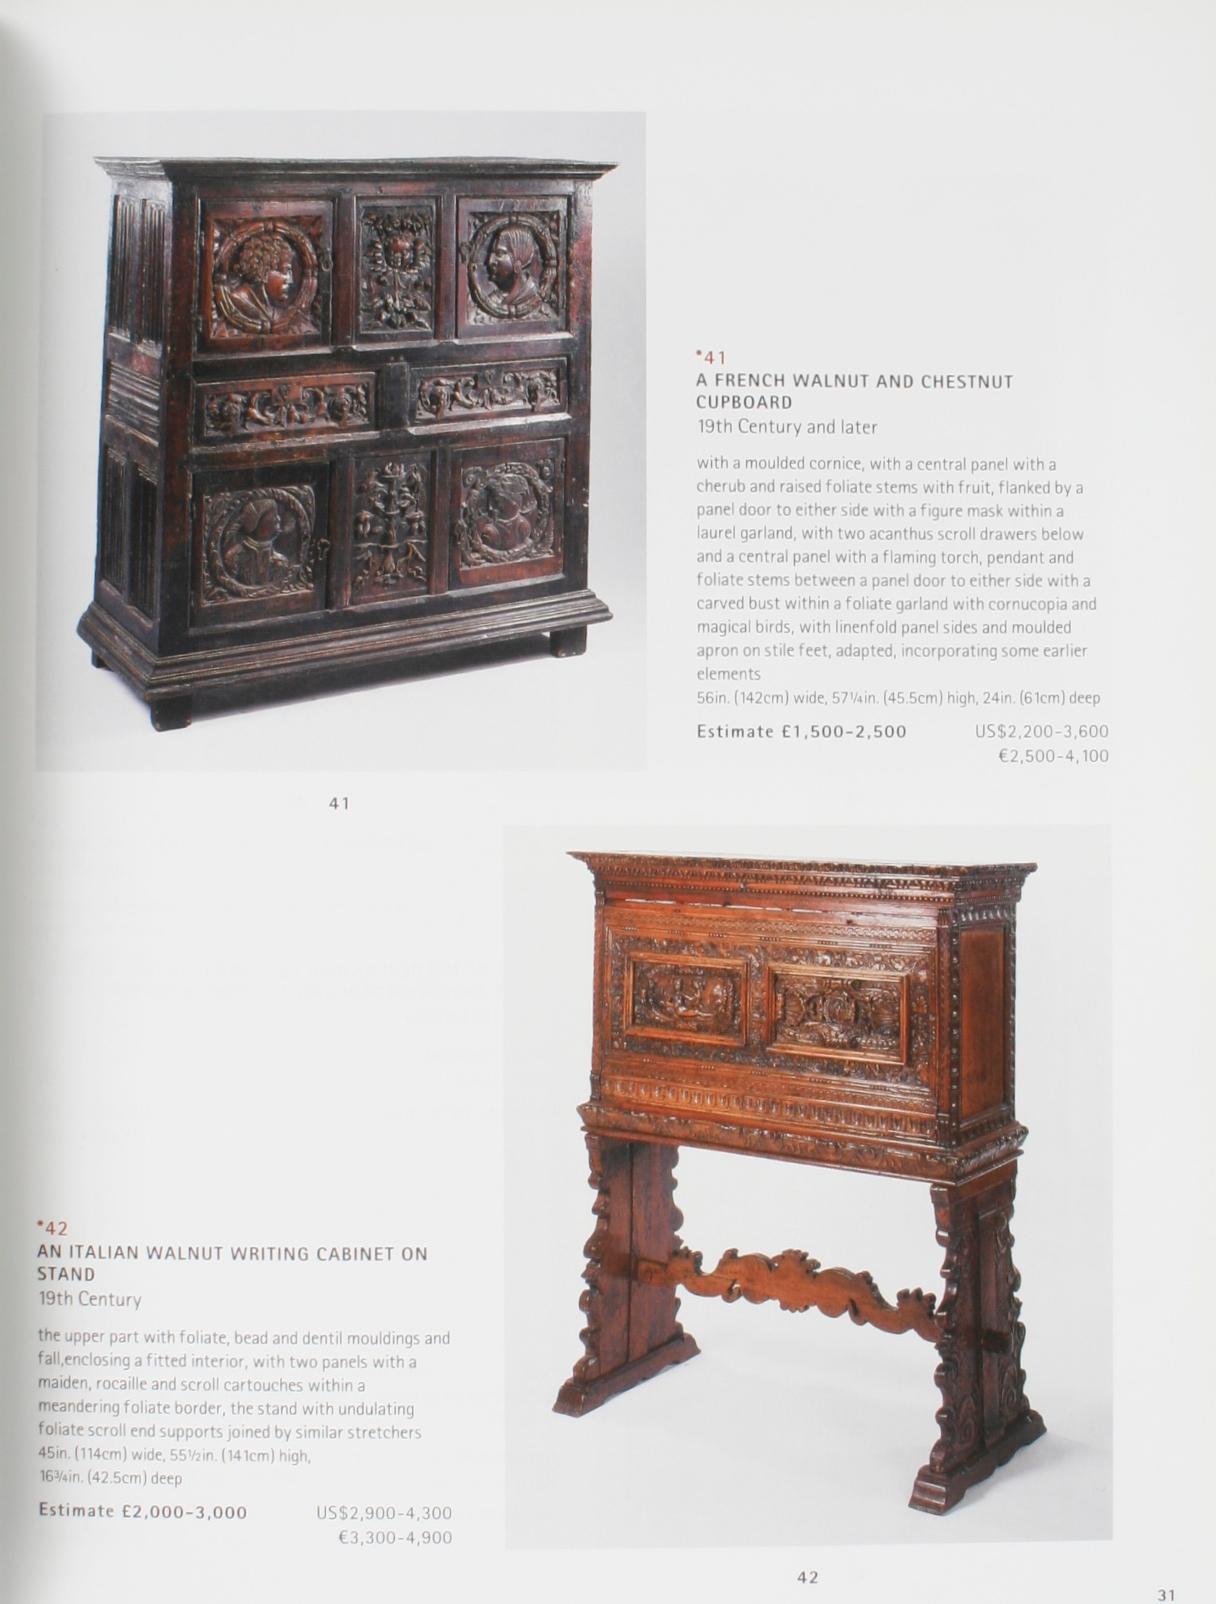 Contemporary Christie's Works of Art Form Chateau Les Tours De Lenvège Auction Catalog 4/2002